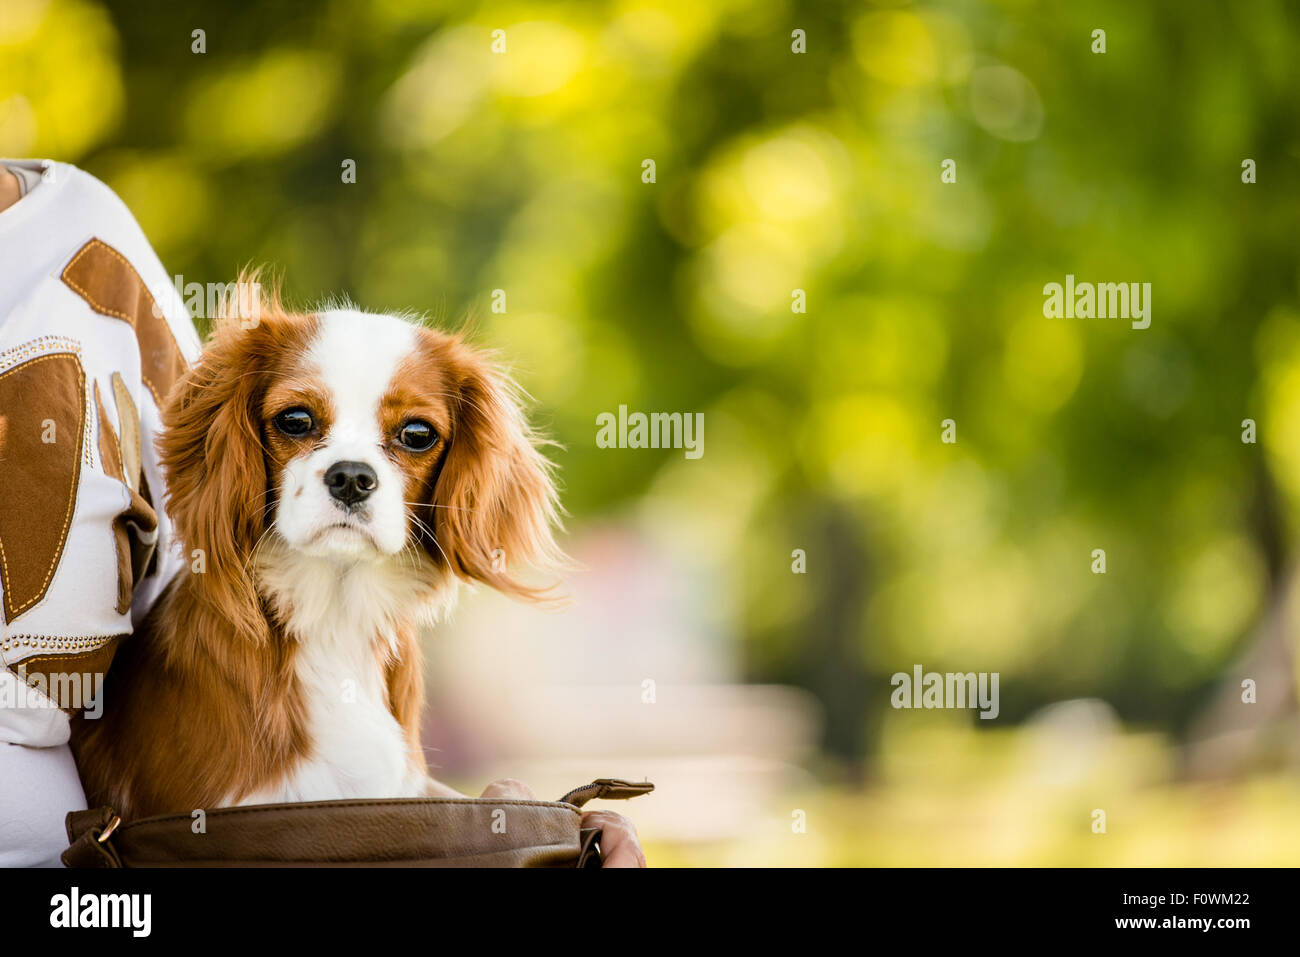 Ritratto del cavalier cane in natura con spazio di copia Foto Stock